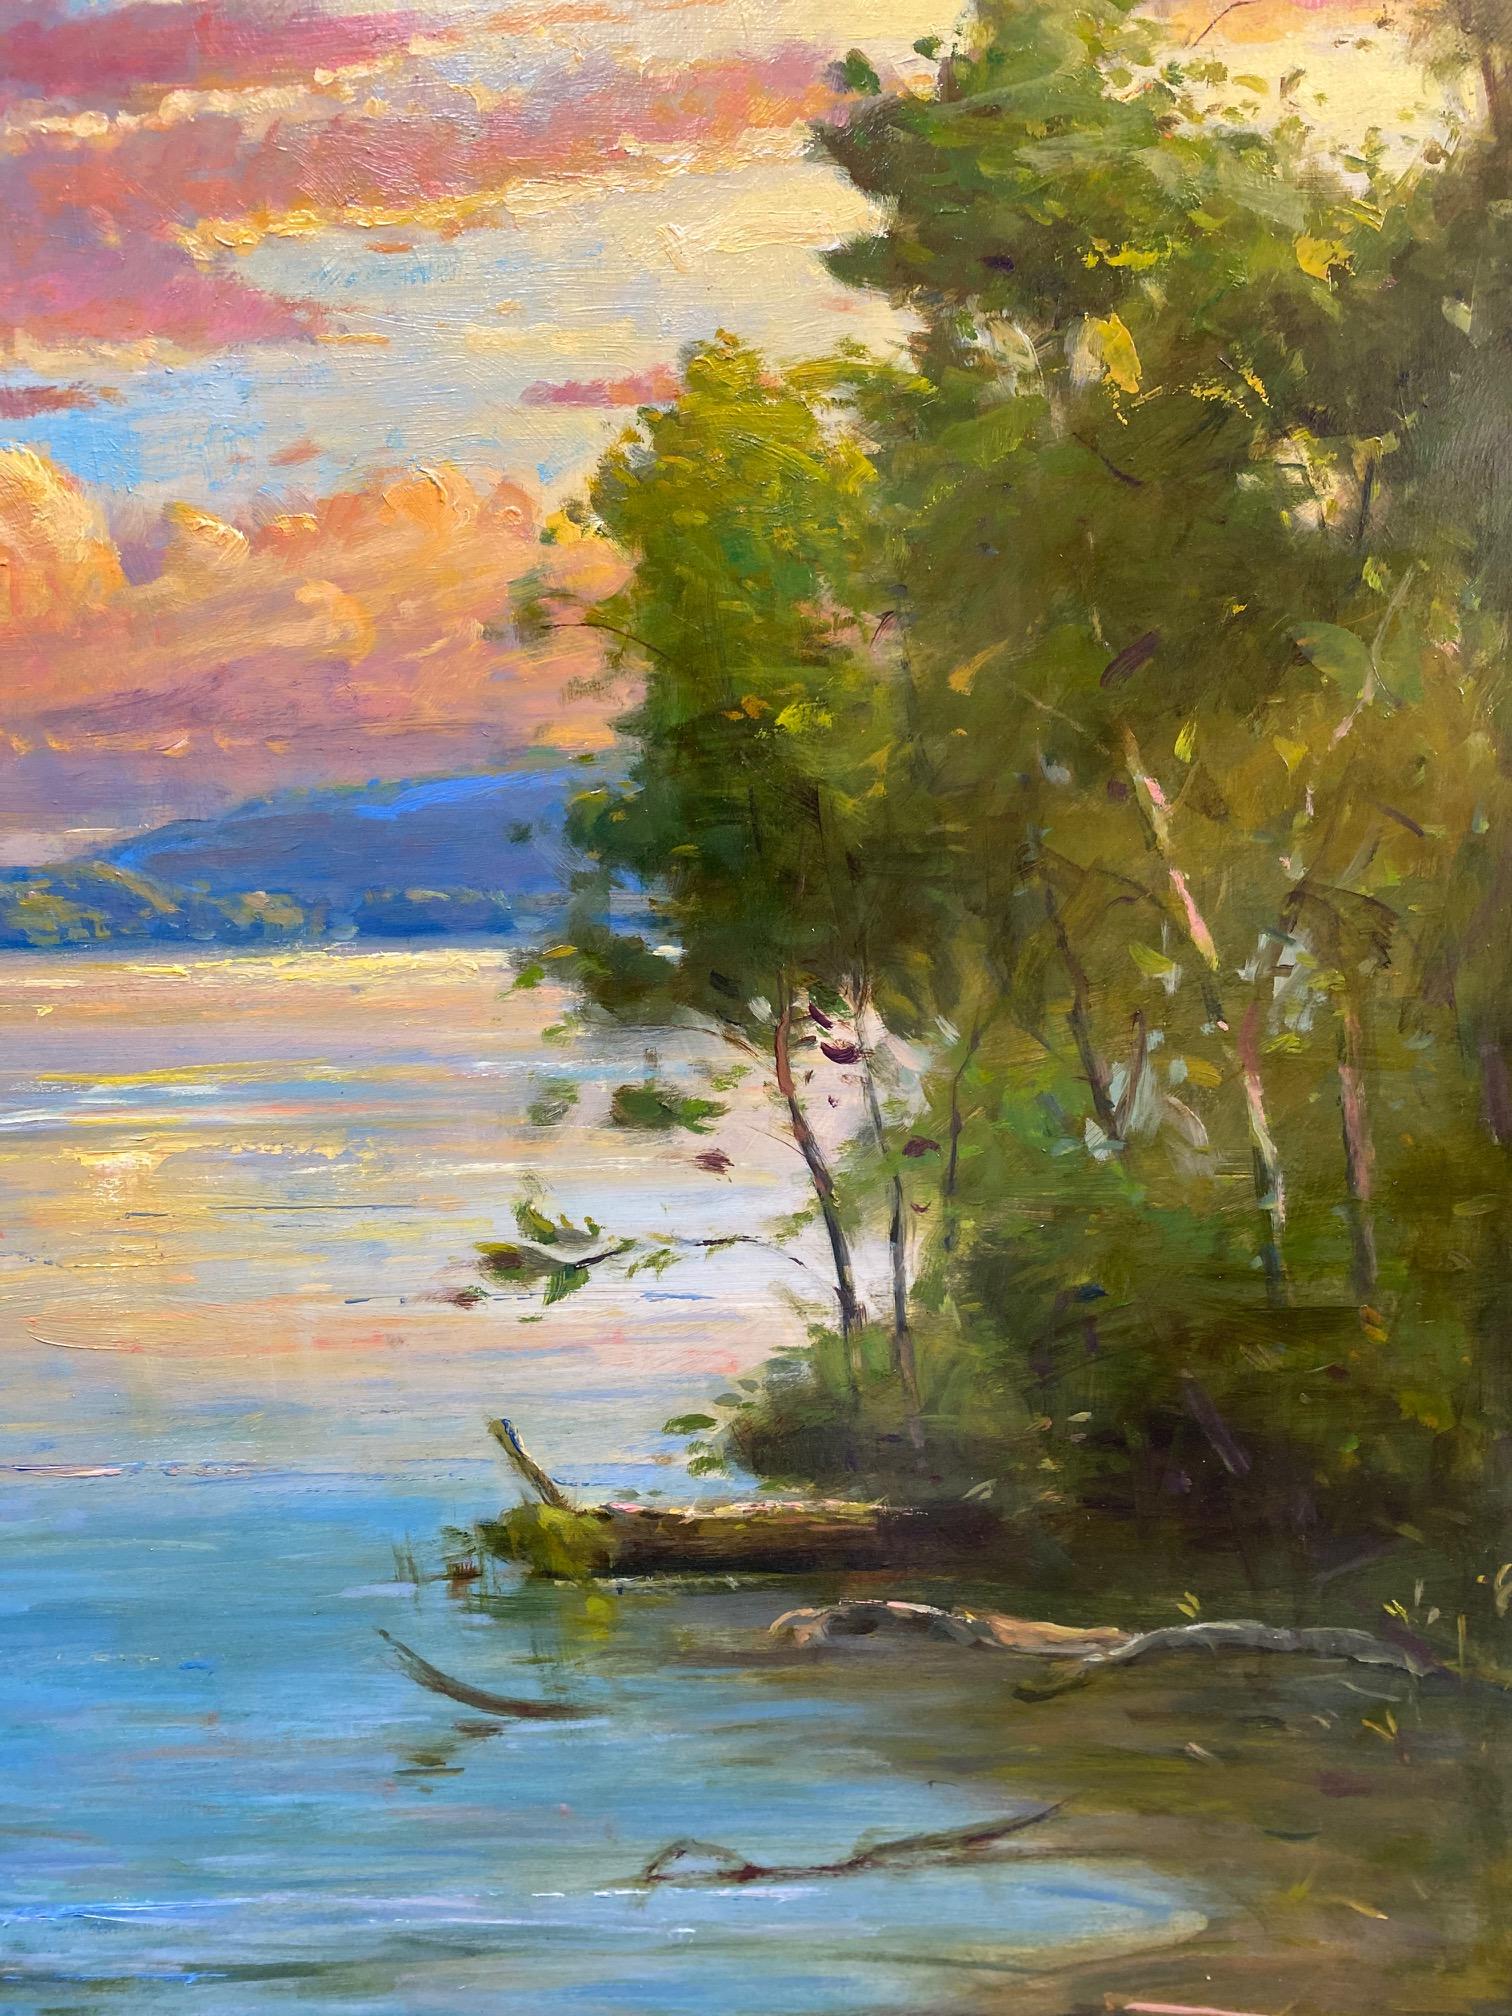 Glimpse from the Cove - Paysage marin impressionniste original 36x36 - Marron Landscape Painting par Jim Rodgers